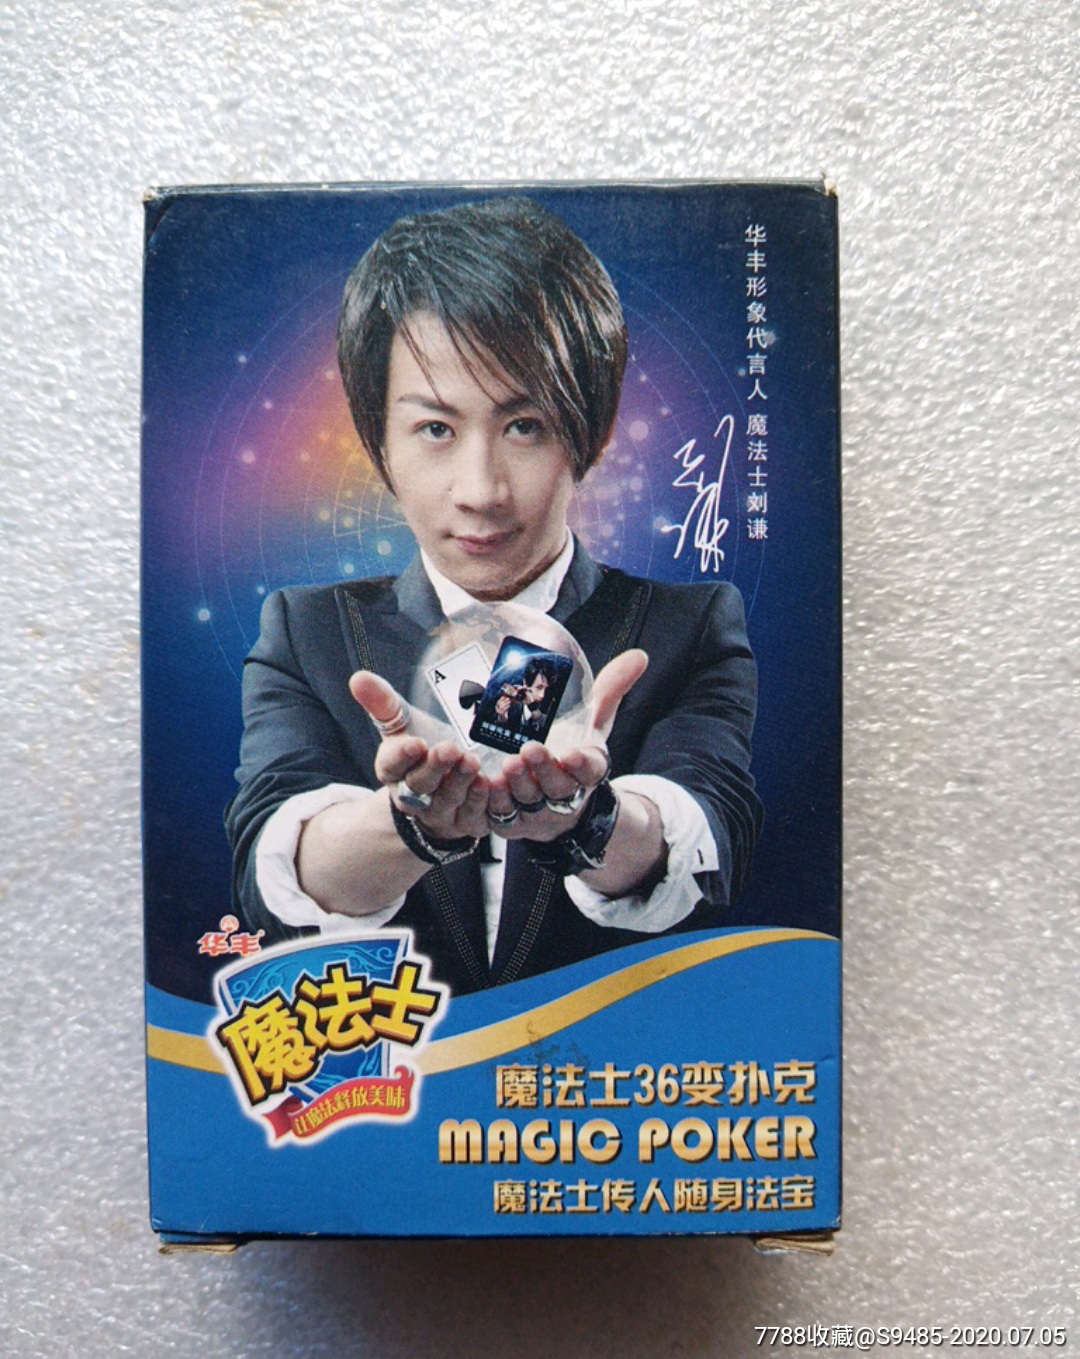 华丰-魔法士36变扑克(刘谦图)